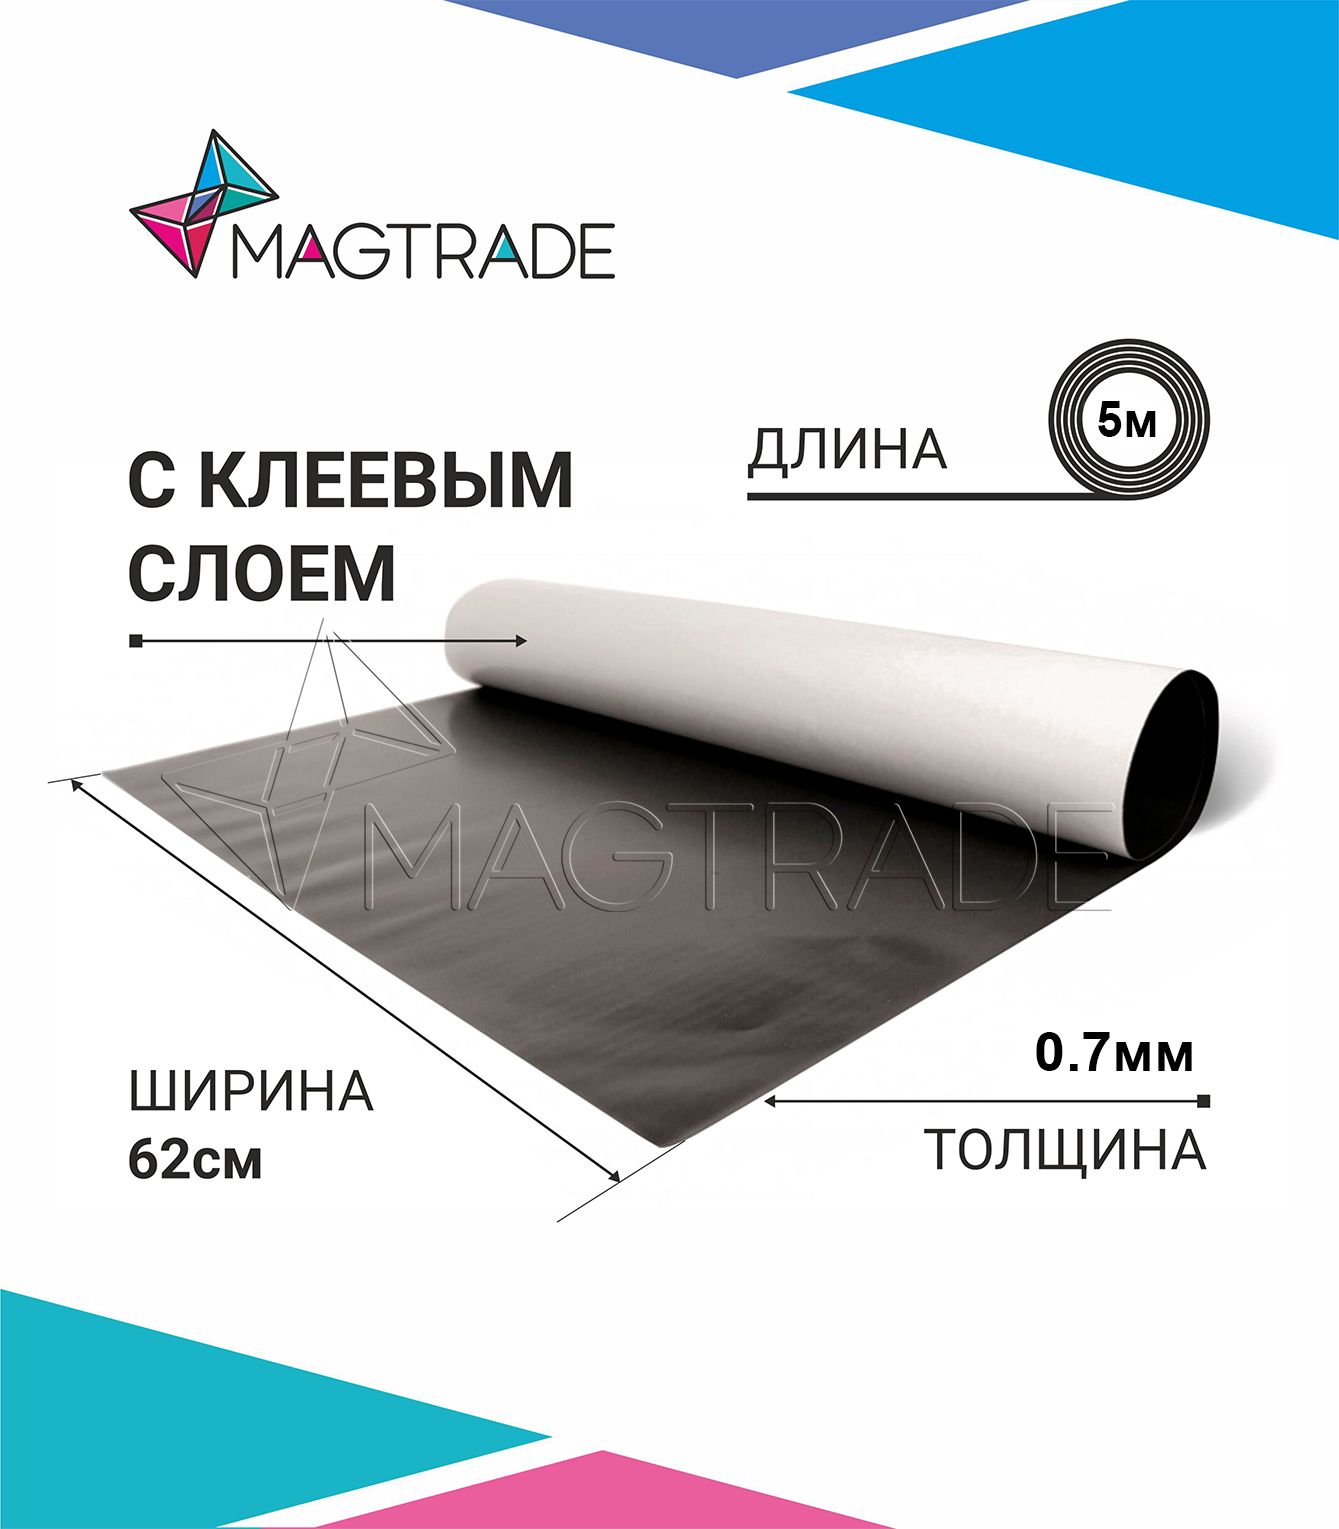 Магнитный винил MAGTRADE с клеевым слоем 0,62 х 5 м, толщина 0,7 мм, лист 5 метров магнитный винил magtrade с клеем толщина 0 9 мм лист 5м